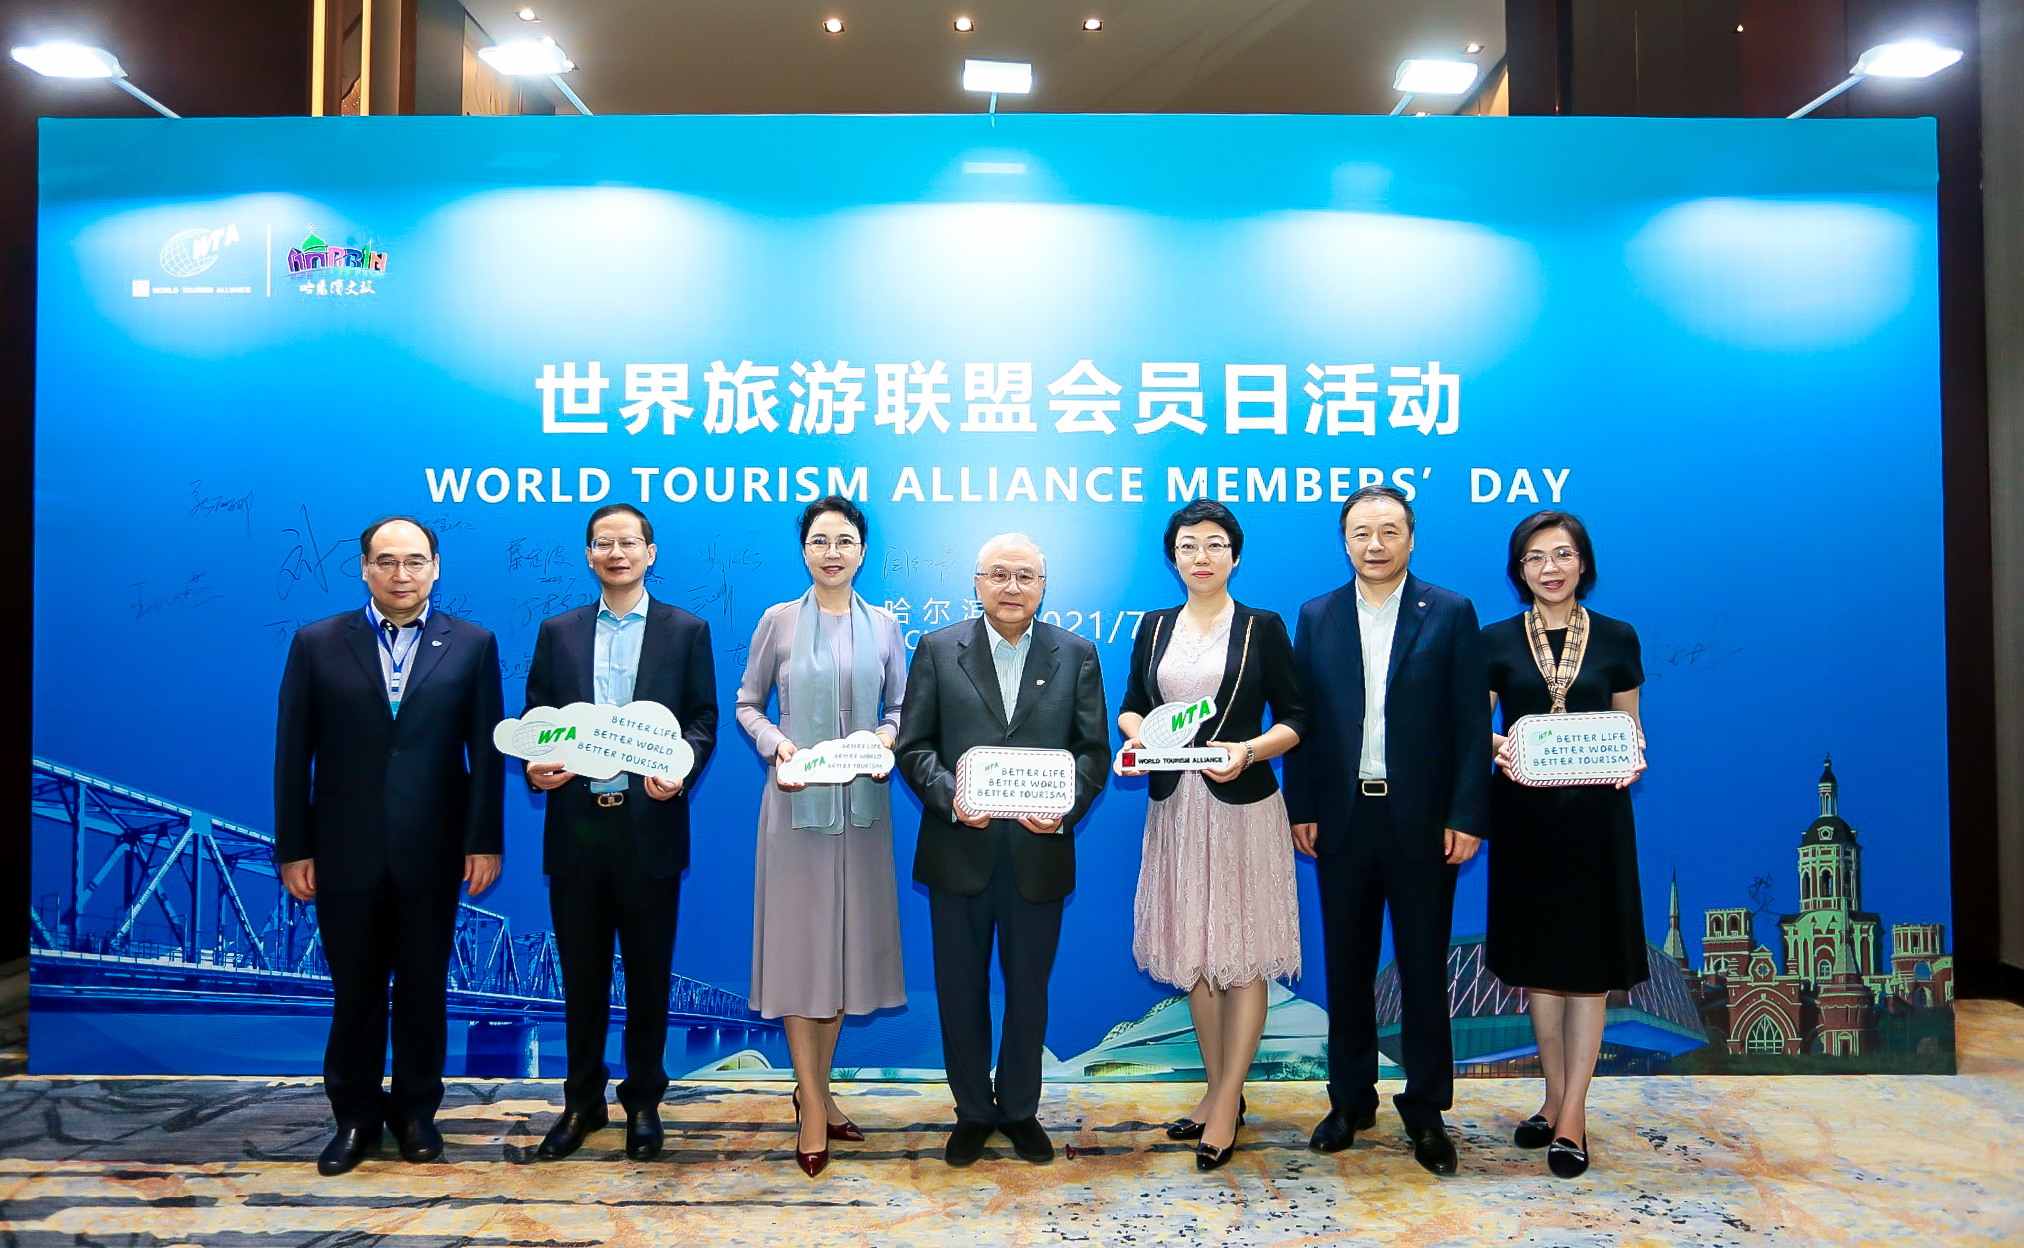 2021WTA会员日 哈尔滨市文化广电和旅游局·中国哈尔滨